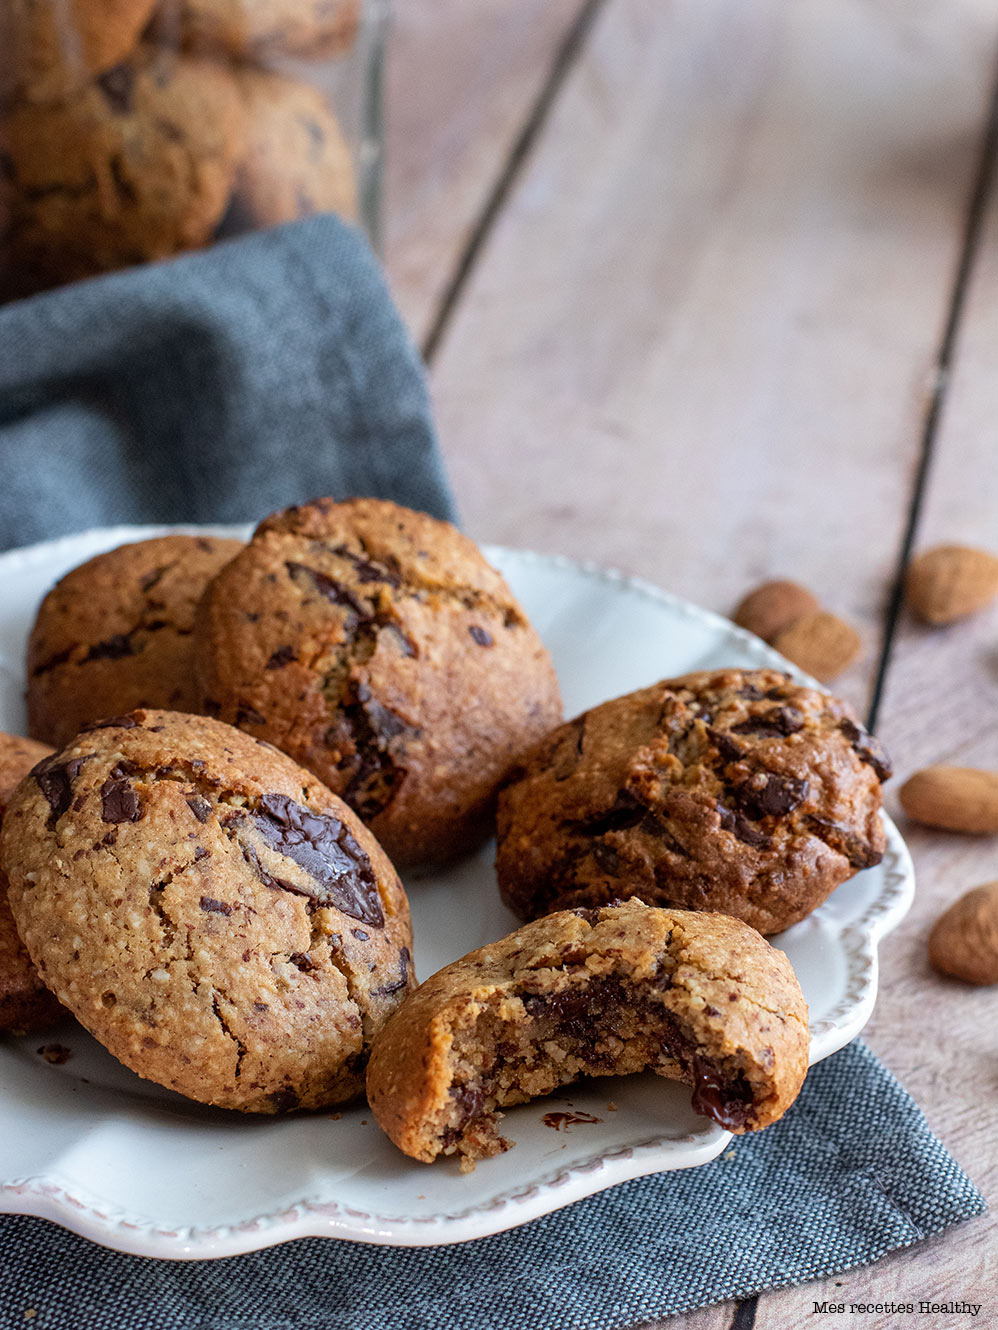 recette healthy-cookie sans gluten-cookie aux amandes-chataigne